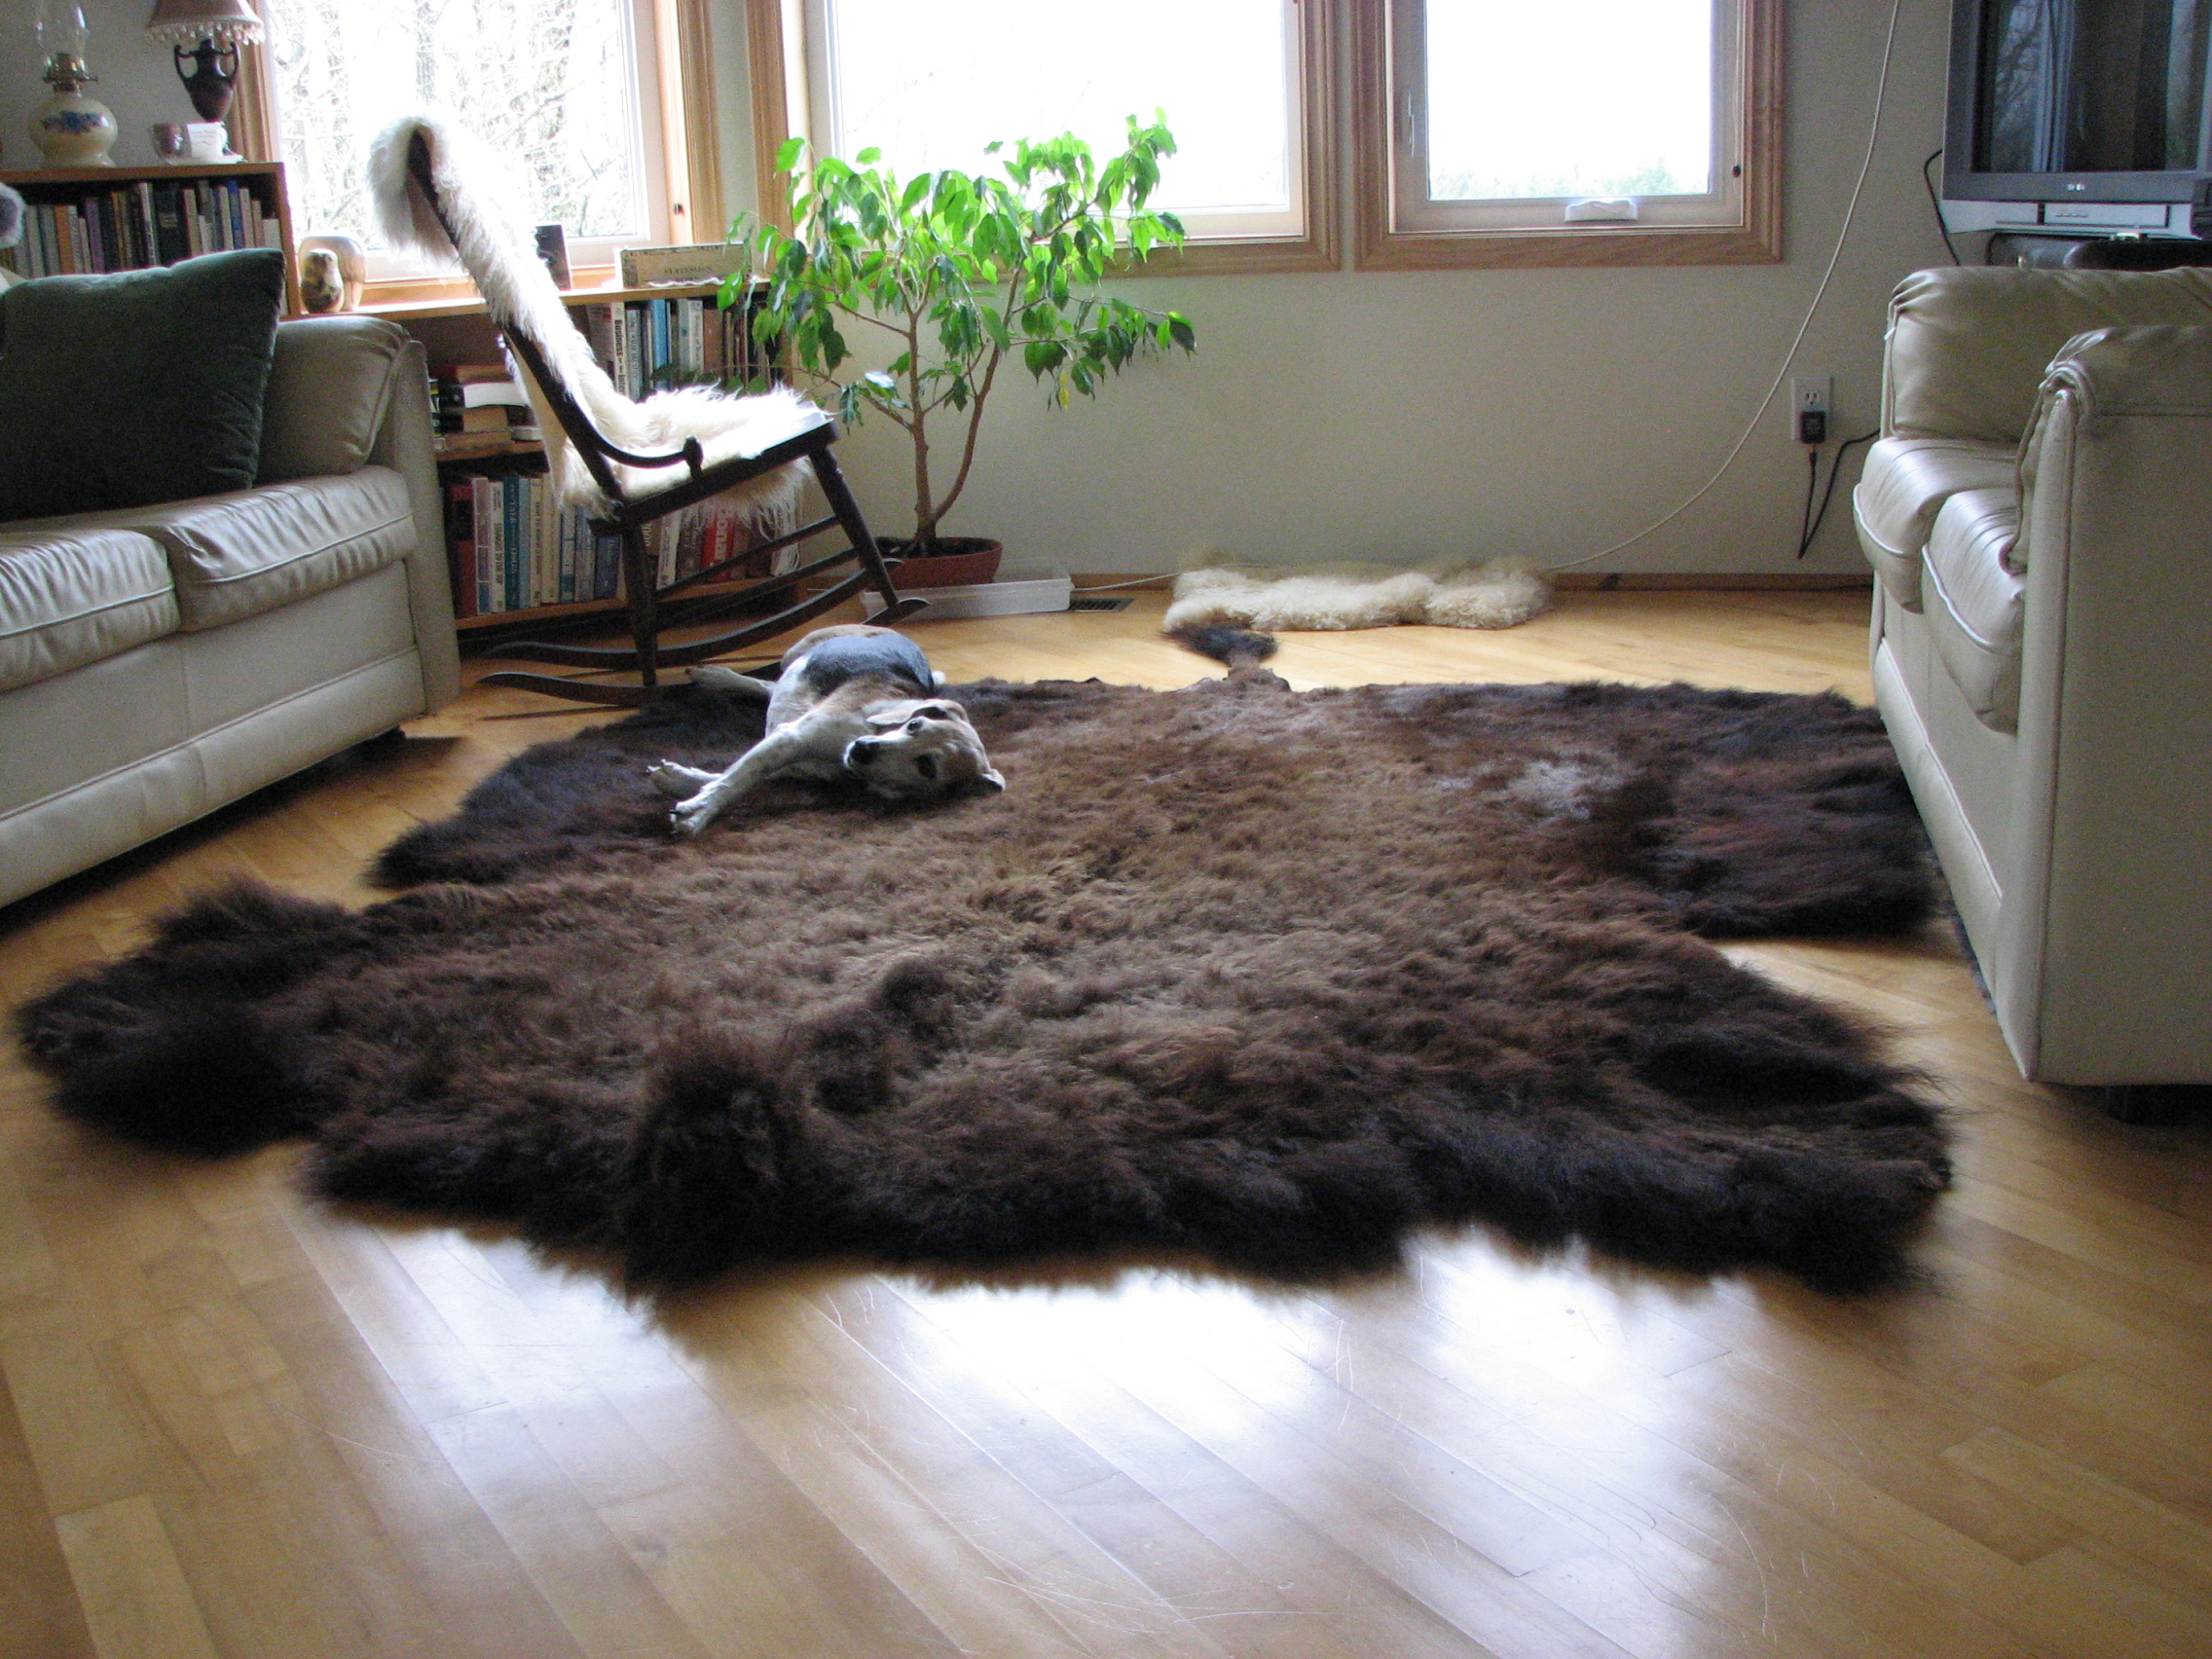 Buffalo rug, as enjoyed by the beagle